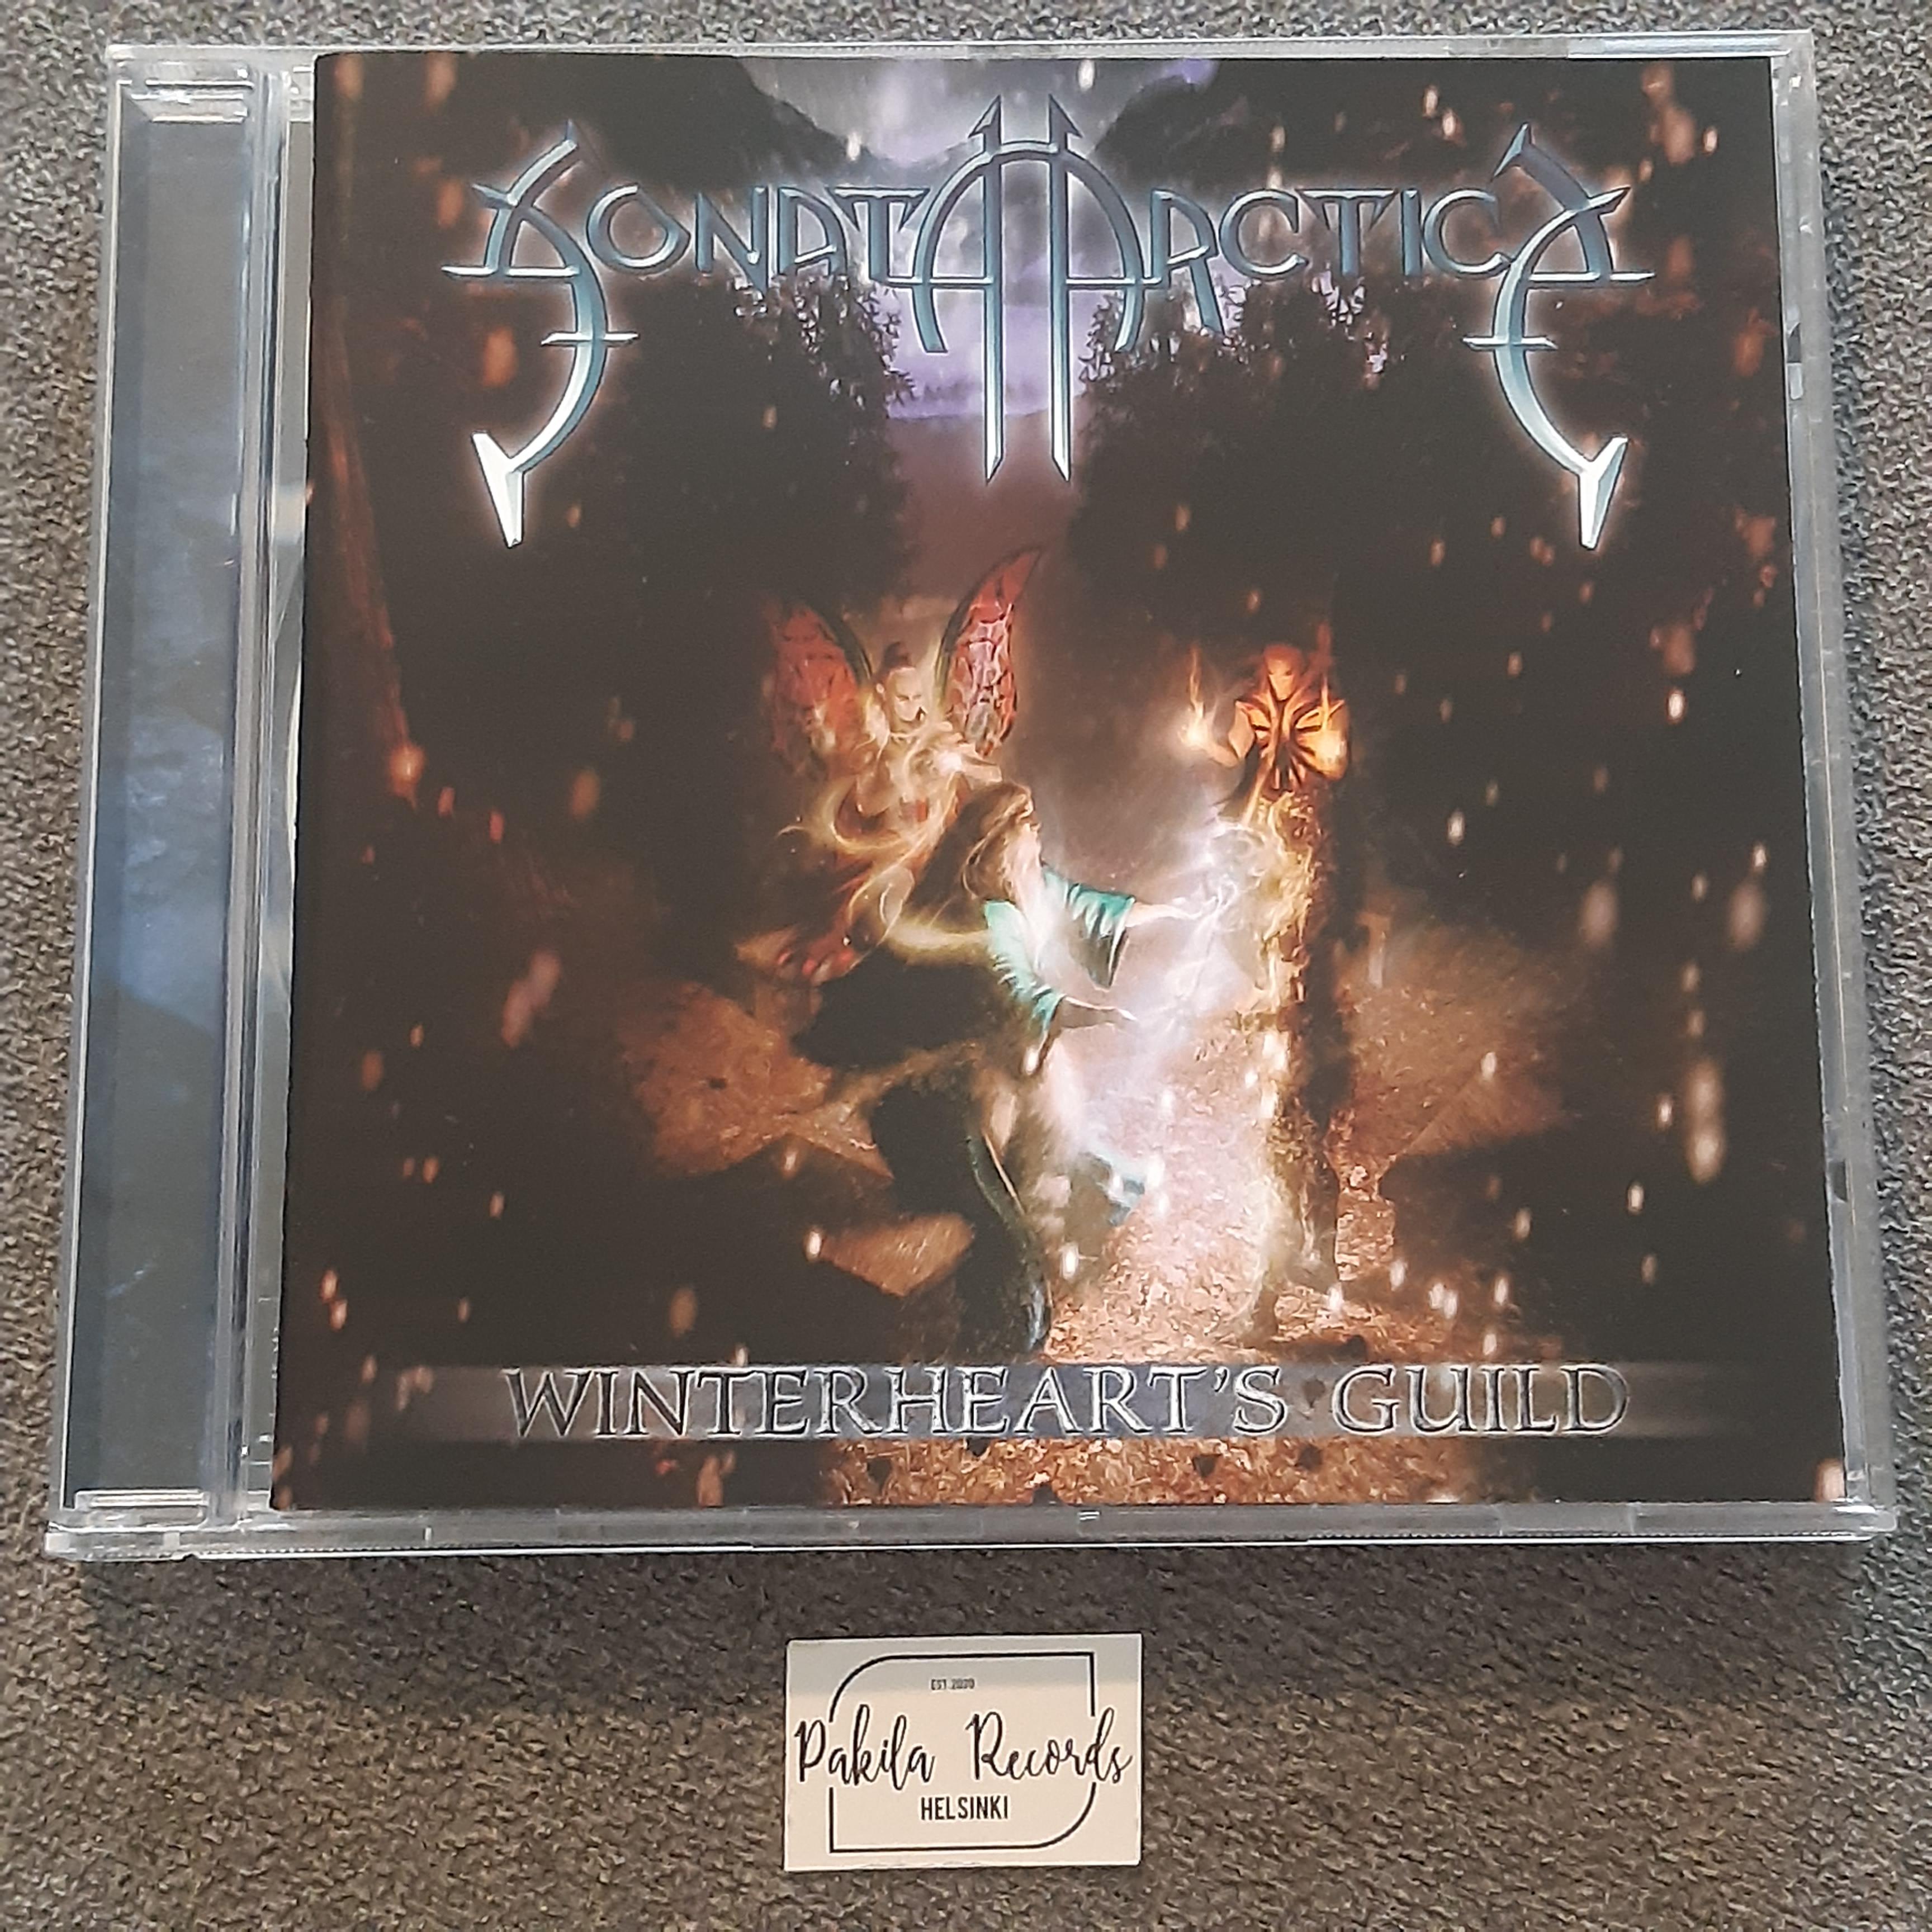 Sonata Arctica - Winterheart's Guild - CD (käytetty)